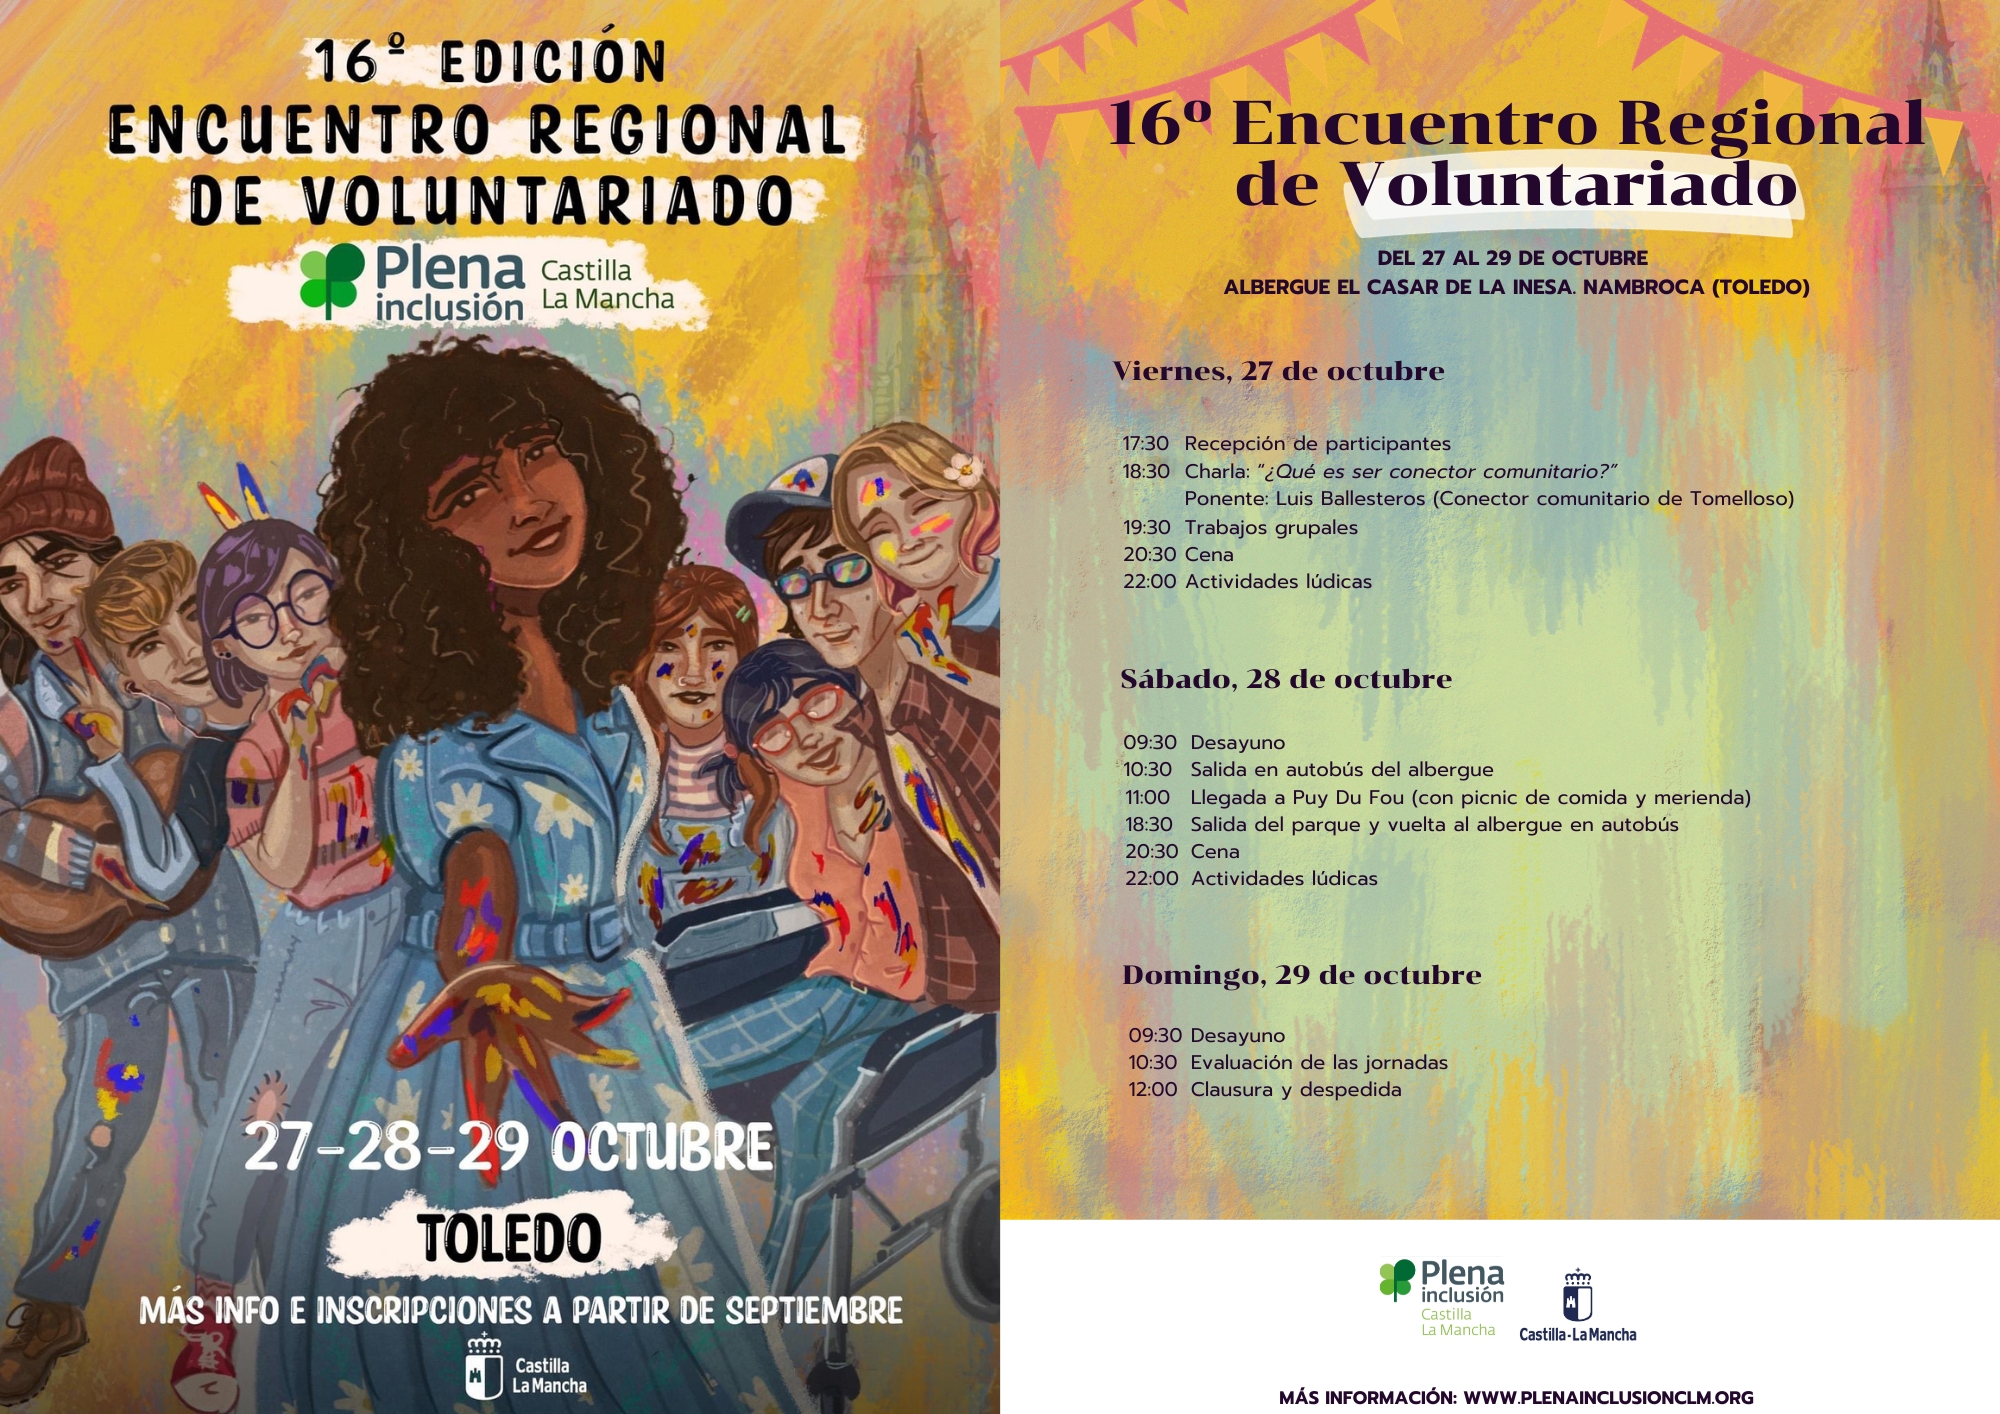 Ir a El 16º Encuentro Regional de Voluntariado de Plena inclusión Castilla-La Mancha tendrá lugar del 27 al 29 de octubre